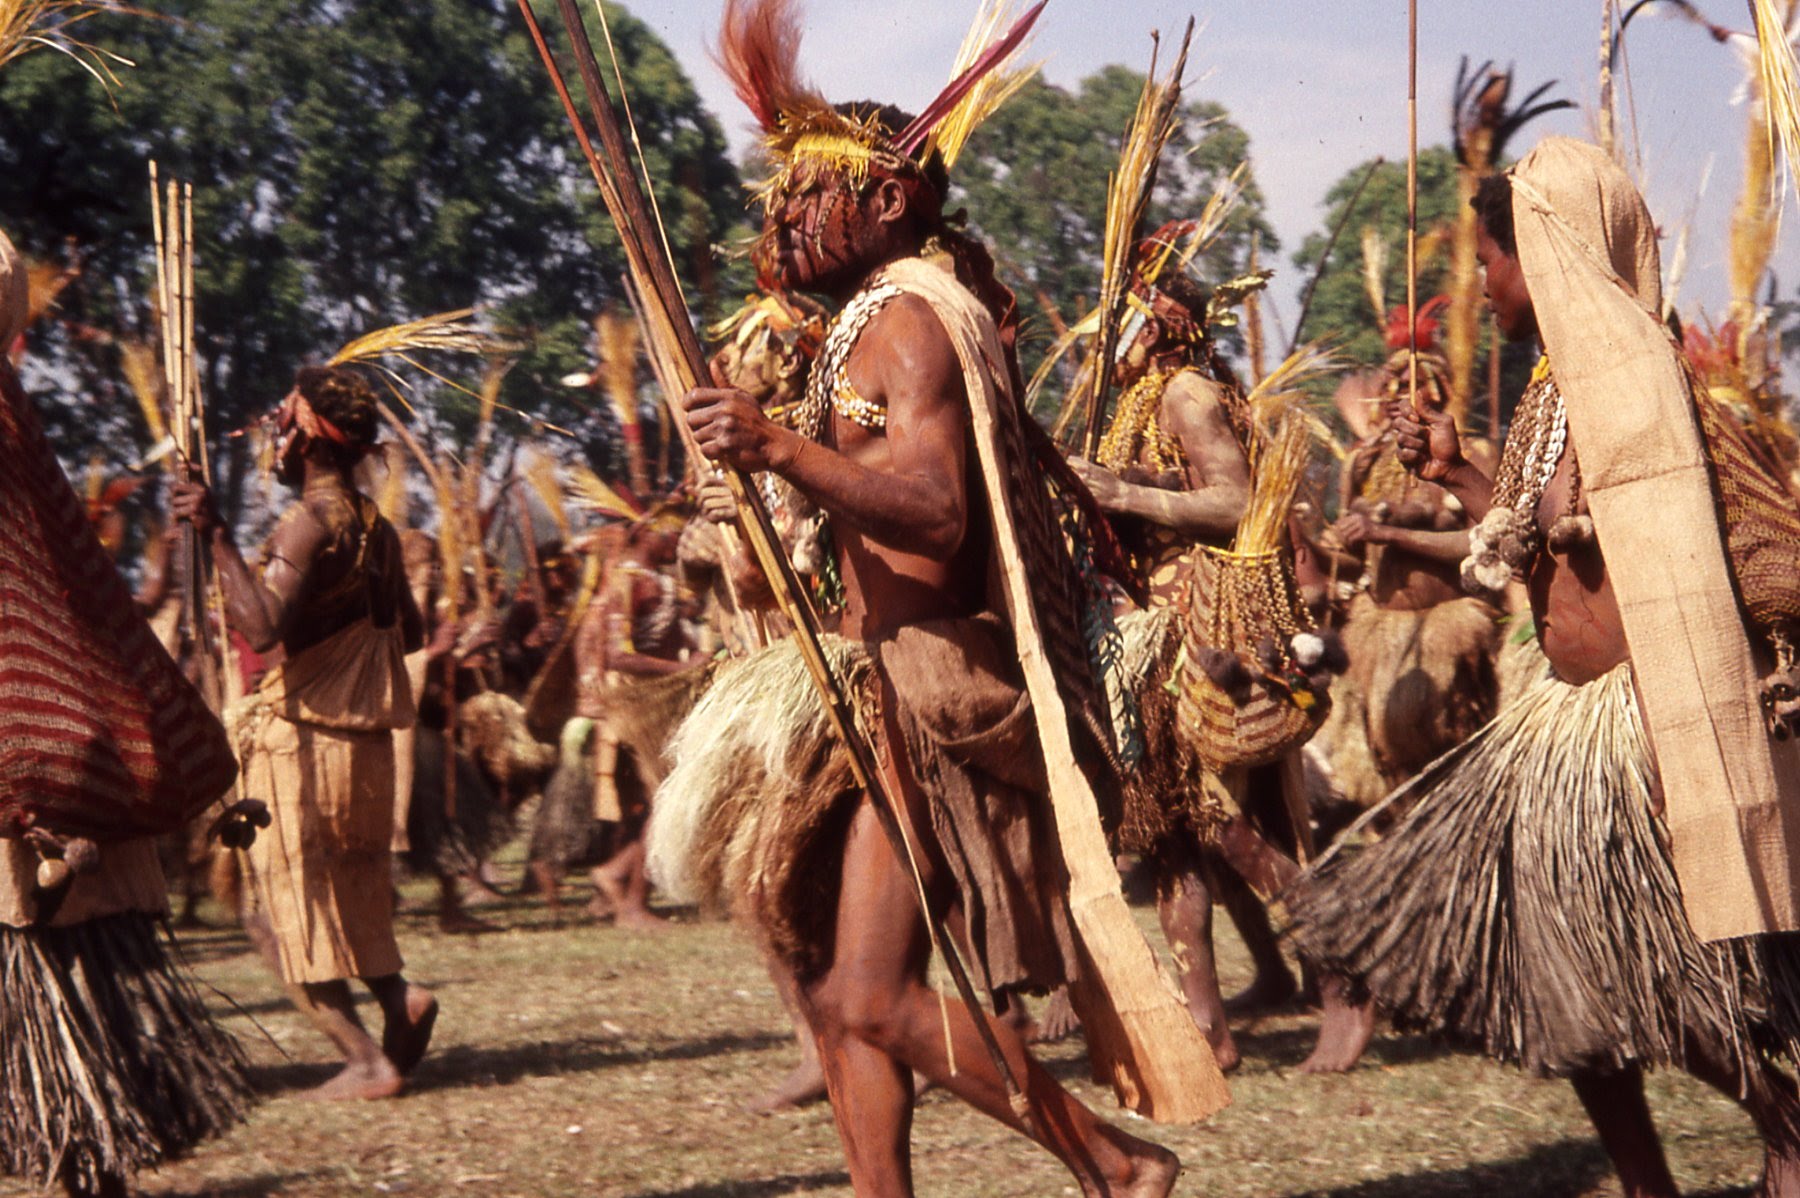 Magia în Papua Noua Guinee